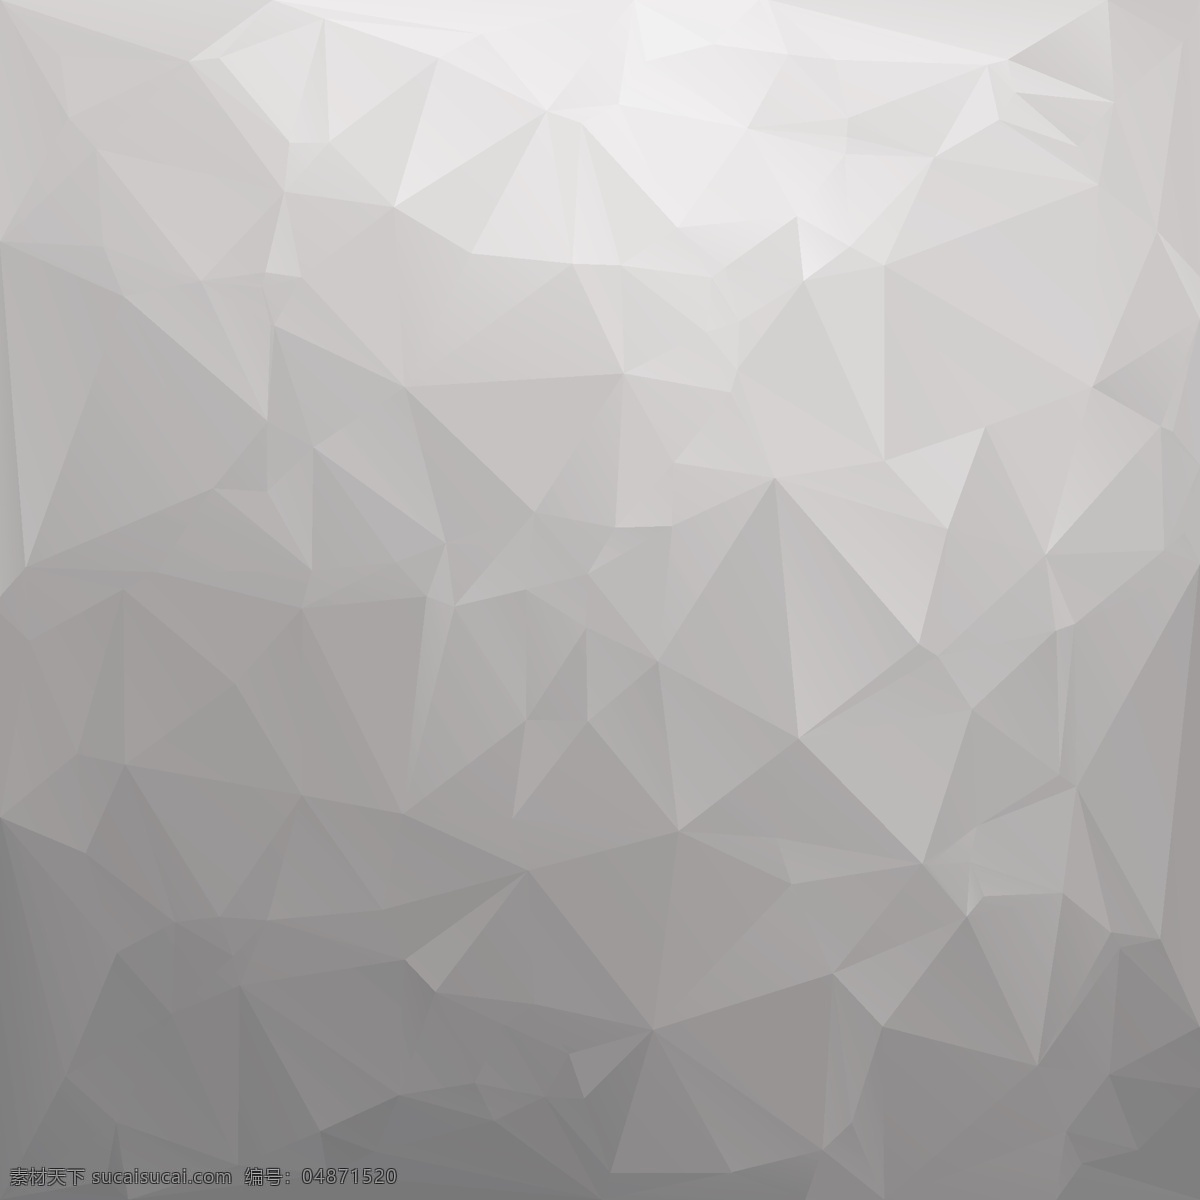 几何图形 创意 3d 立体 背景 矢量 三角形 科技 方格 商务 企业 广告背景 ppt背景 矢量设计